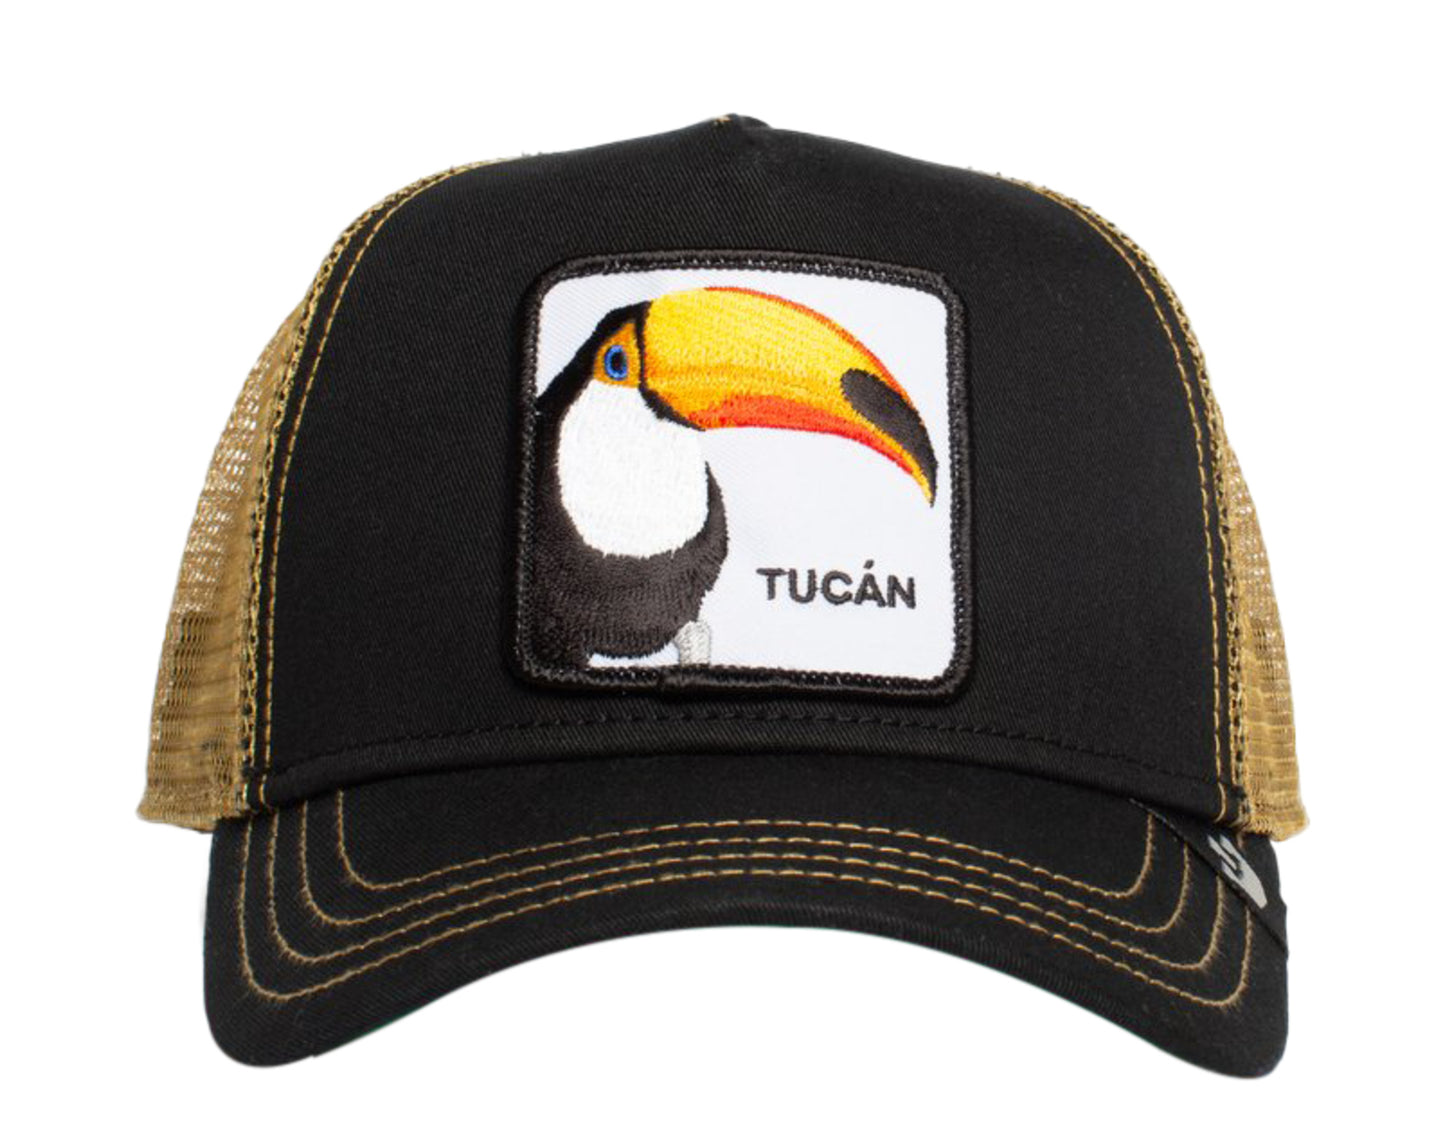 Goorin Bros Tucan Trucker Hat